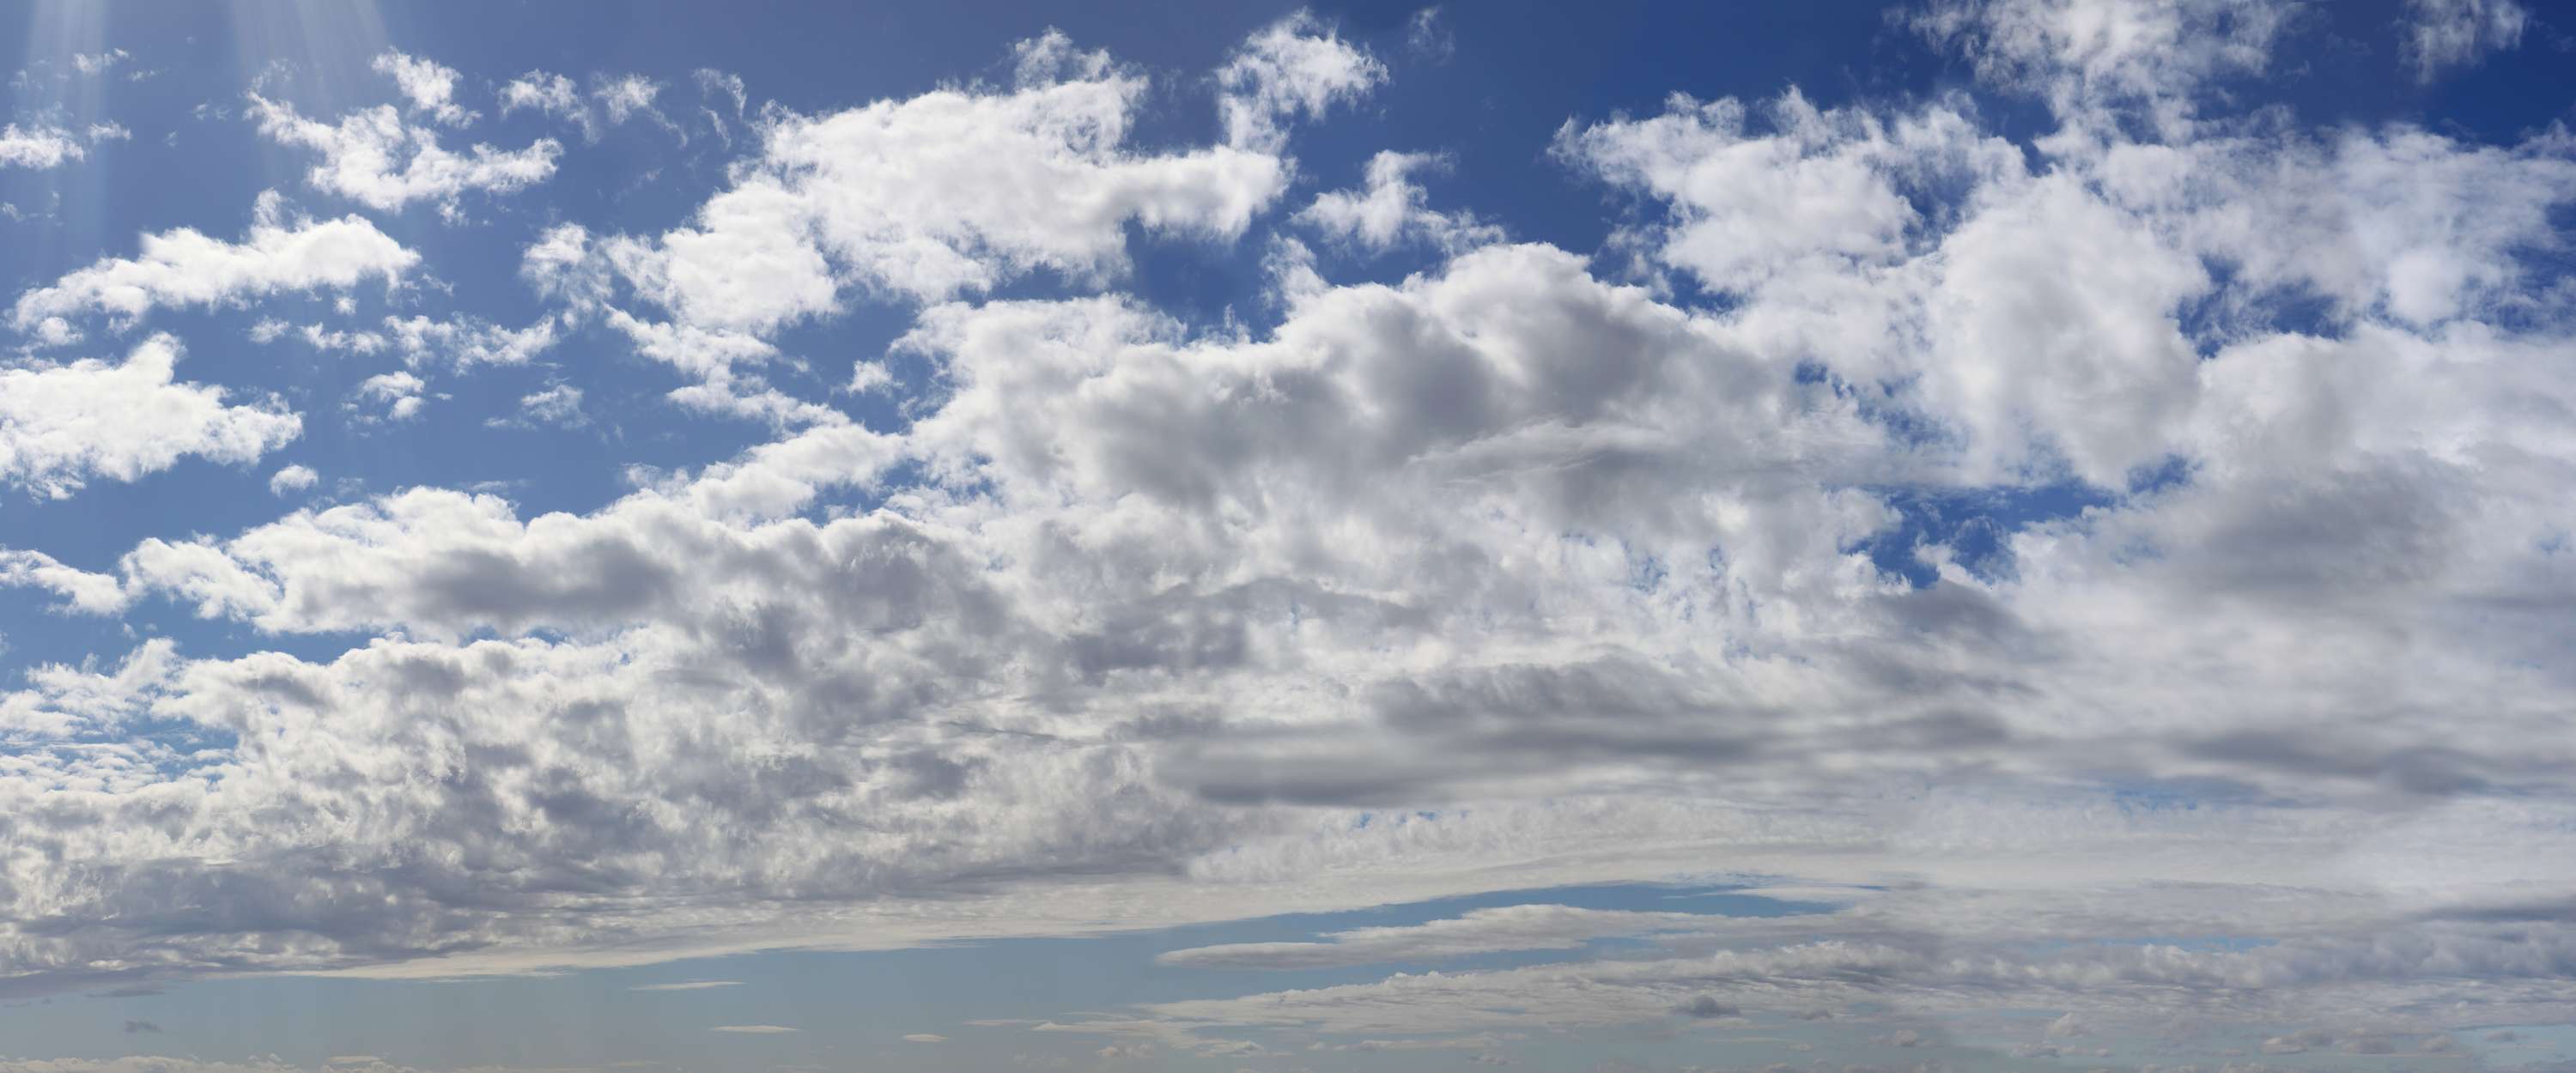             Himmel wolkig – Fototapete Wolkenzug mit blauem Himmel
        